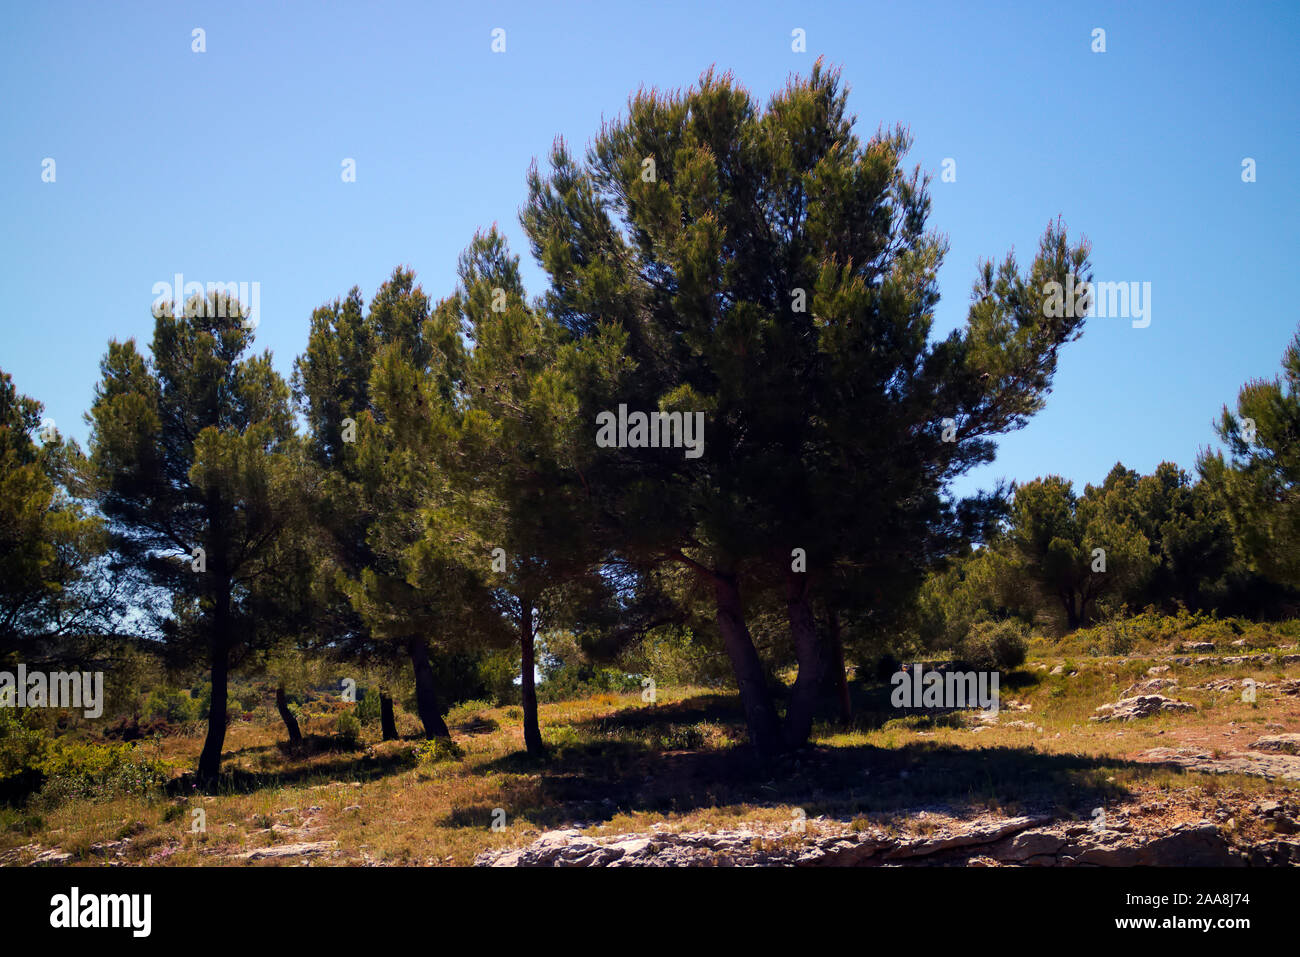 Pierre de parapluie ou de pin Pinus pinea en garrigue méditerranéenne typique de l'habitat côtier Banque D'Images